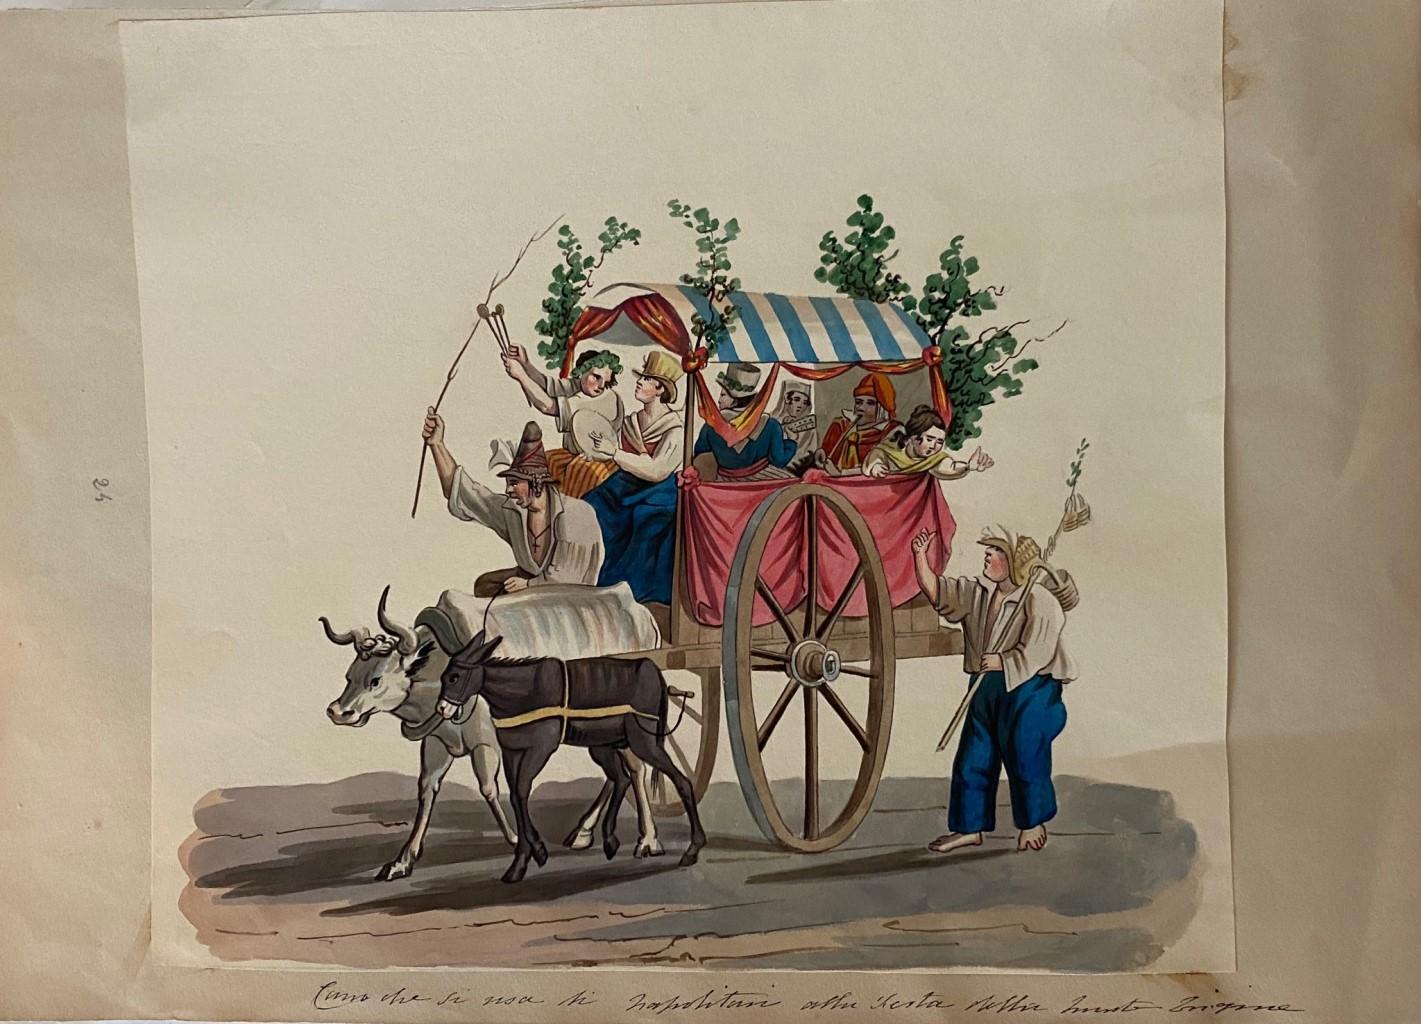 Wagon avec Napolitains est un splendide dessin à la gouache sur papier gravé par l'artiste italien Artiste anonyme du 20ème siècle.

L'état de conservation des œuvres d'art est excellent. 

Non signé. Non numéroté.

Dimension de la feuille : 27 x